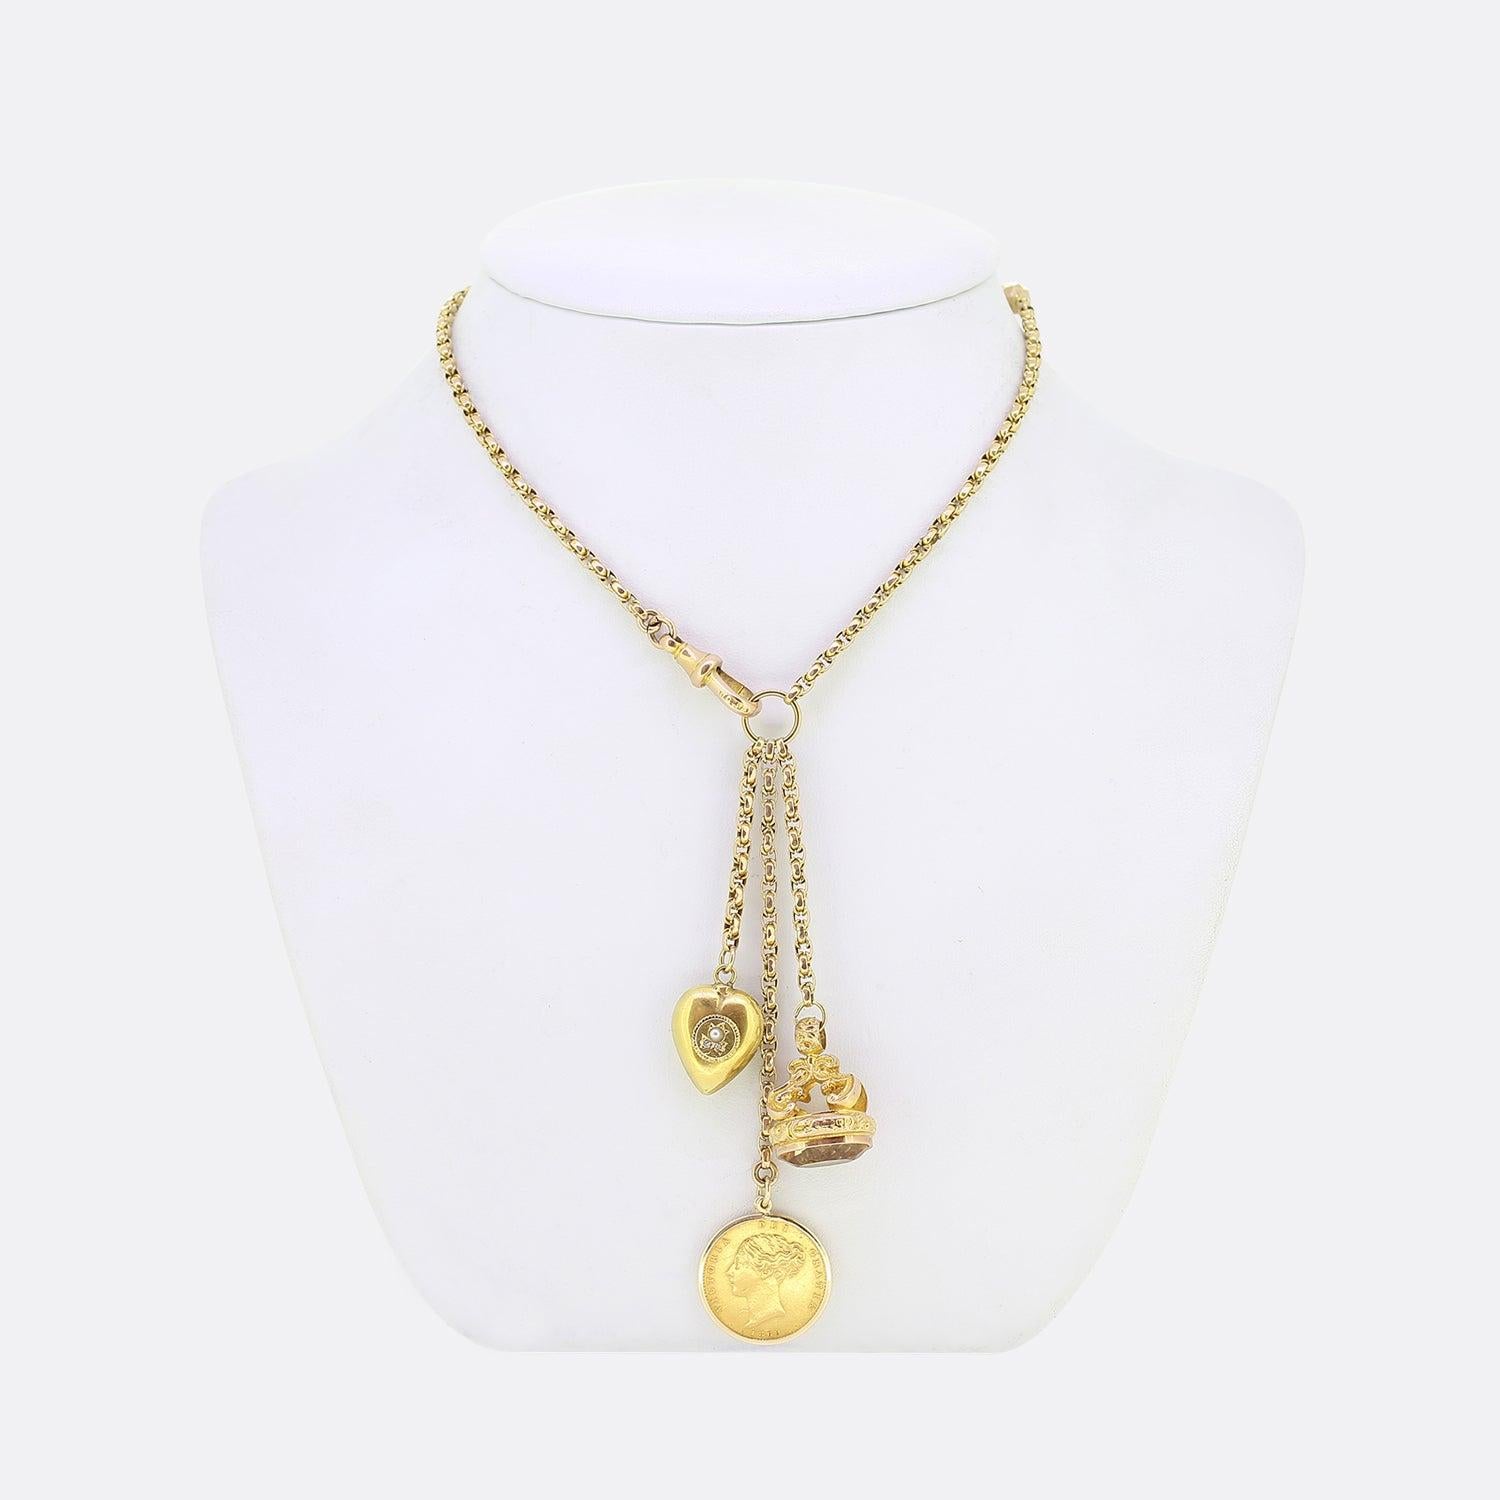 Nous avons ici un collier à breloques vintage en or jaune 9ct à facettes en chaîne de belcher. Le collier accueille un trio de pendentifs, dont un bouton de manchette orné de citrines, un cœur d'amour serti de perles et de diamants taillés en rose